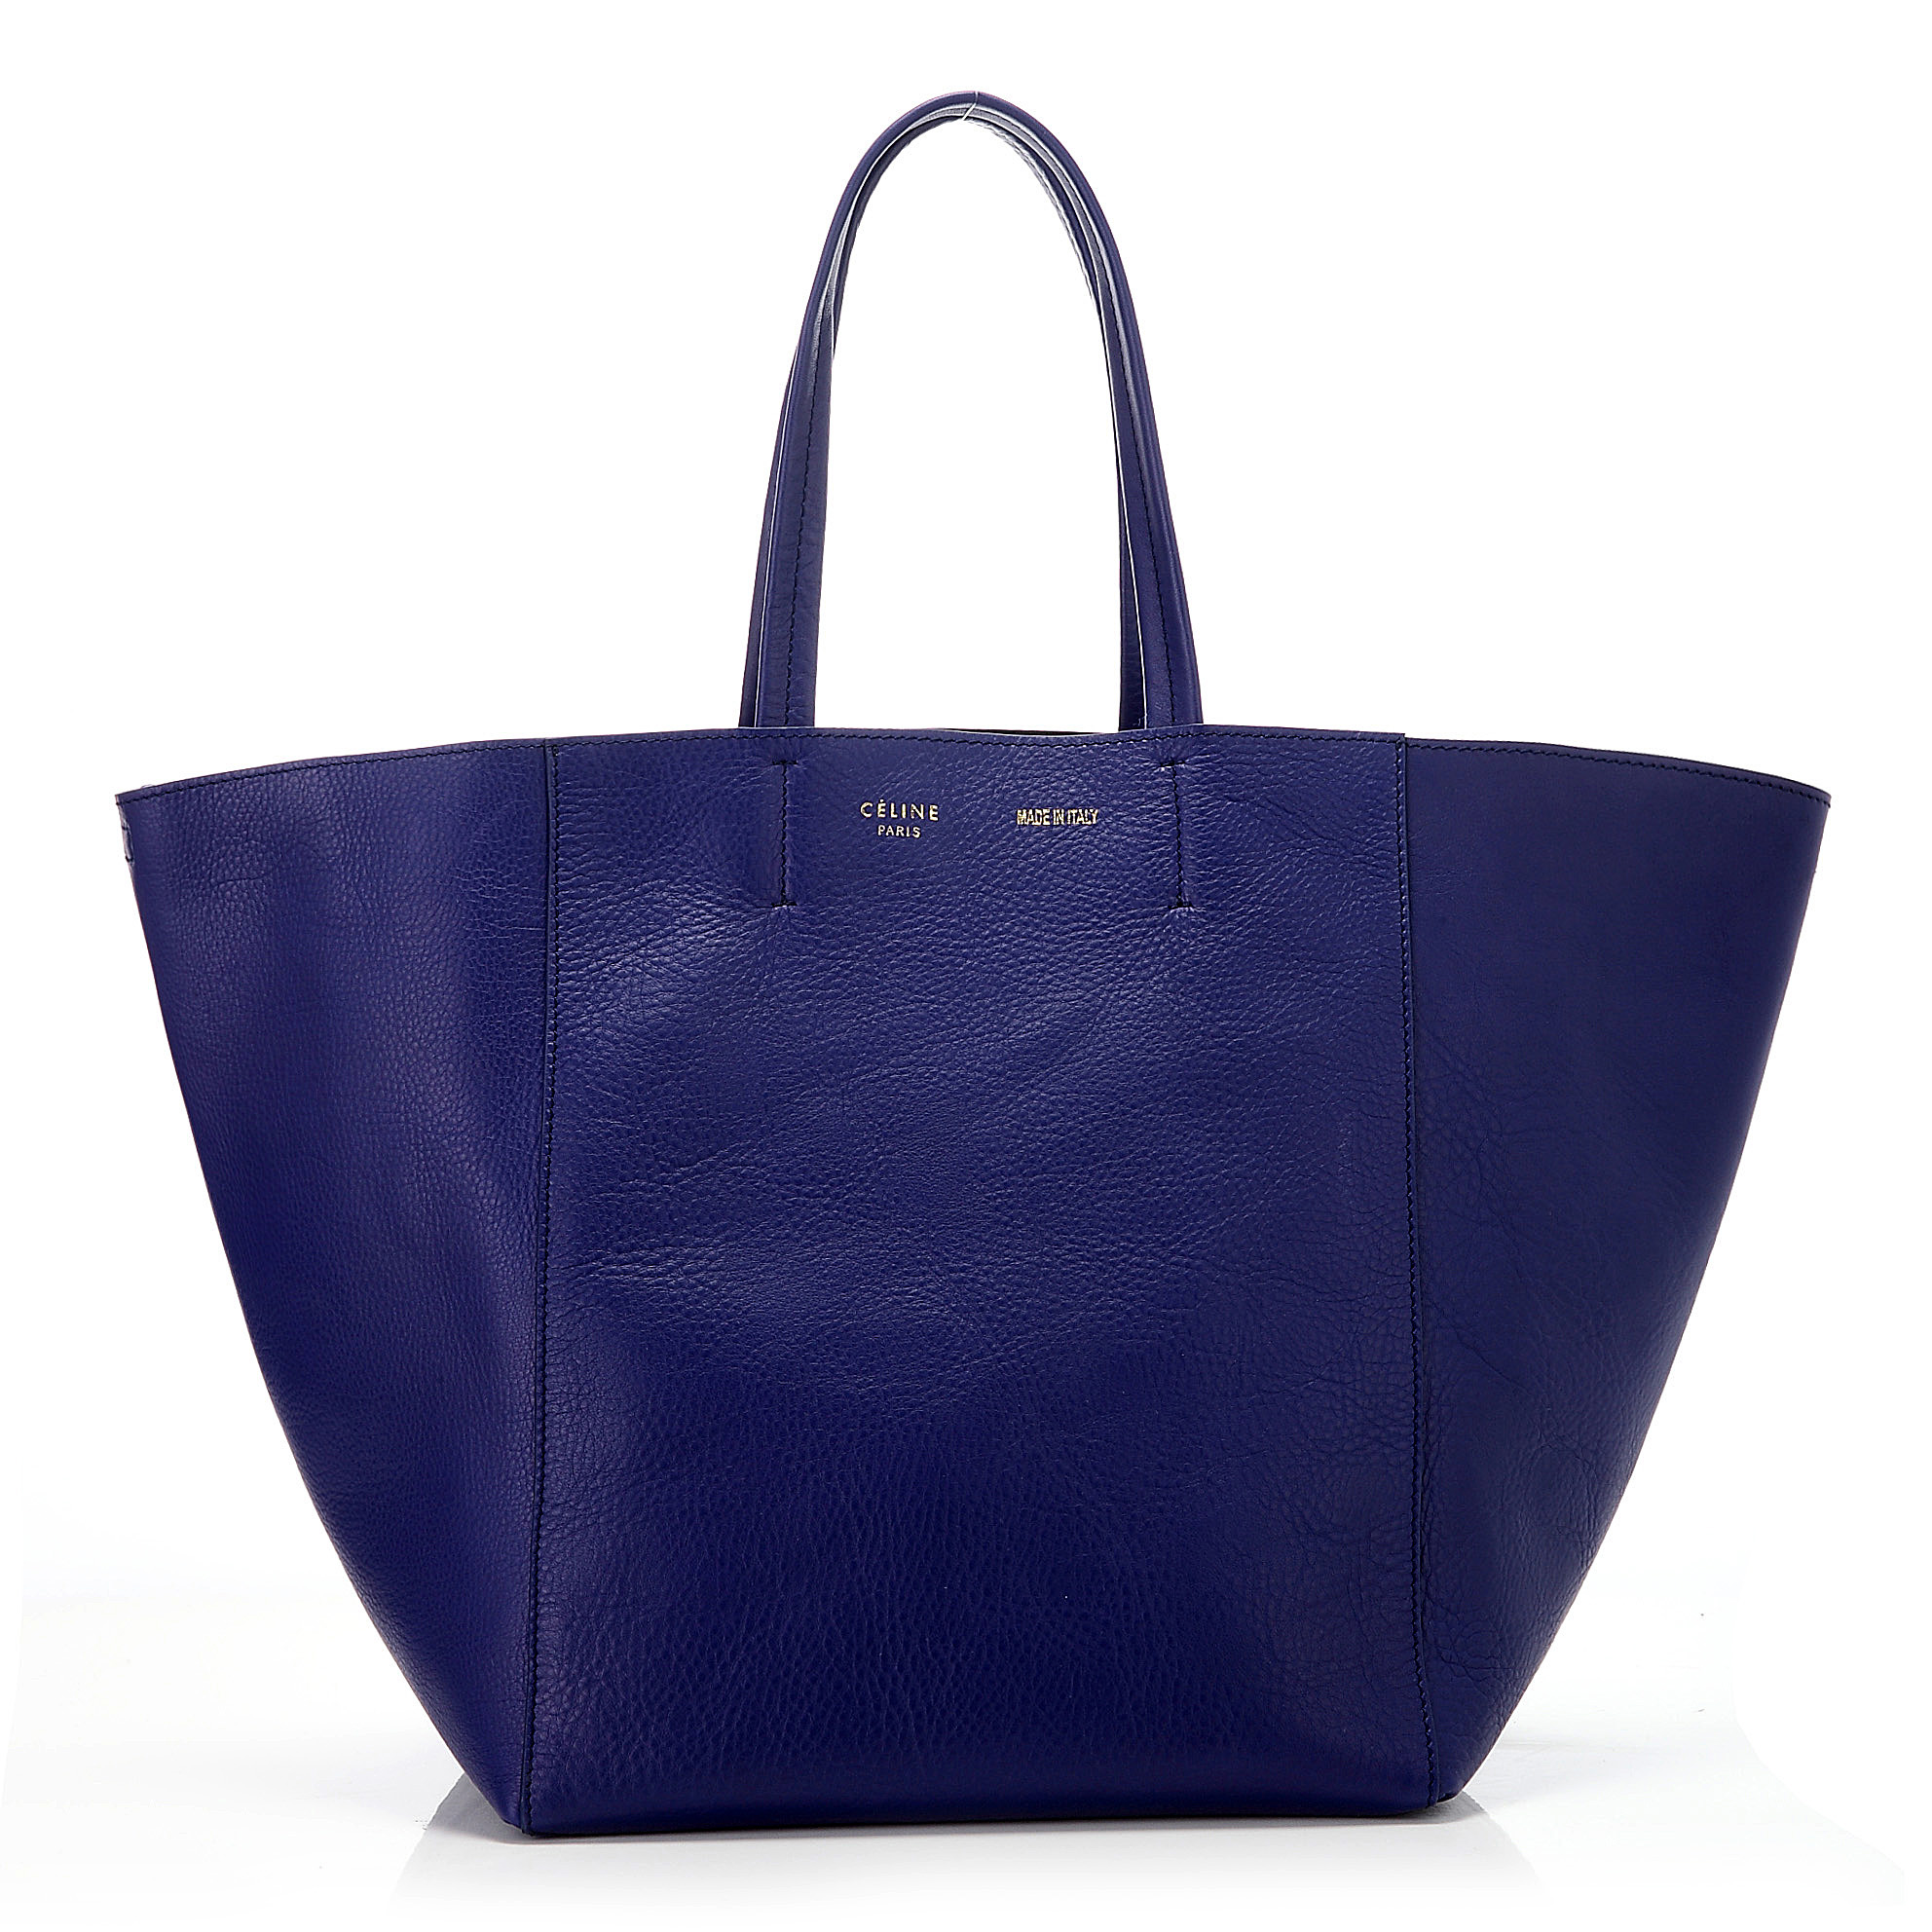 CELINE Cabas 原廠皮革肩背購物包 (深藍色)